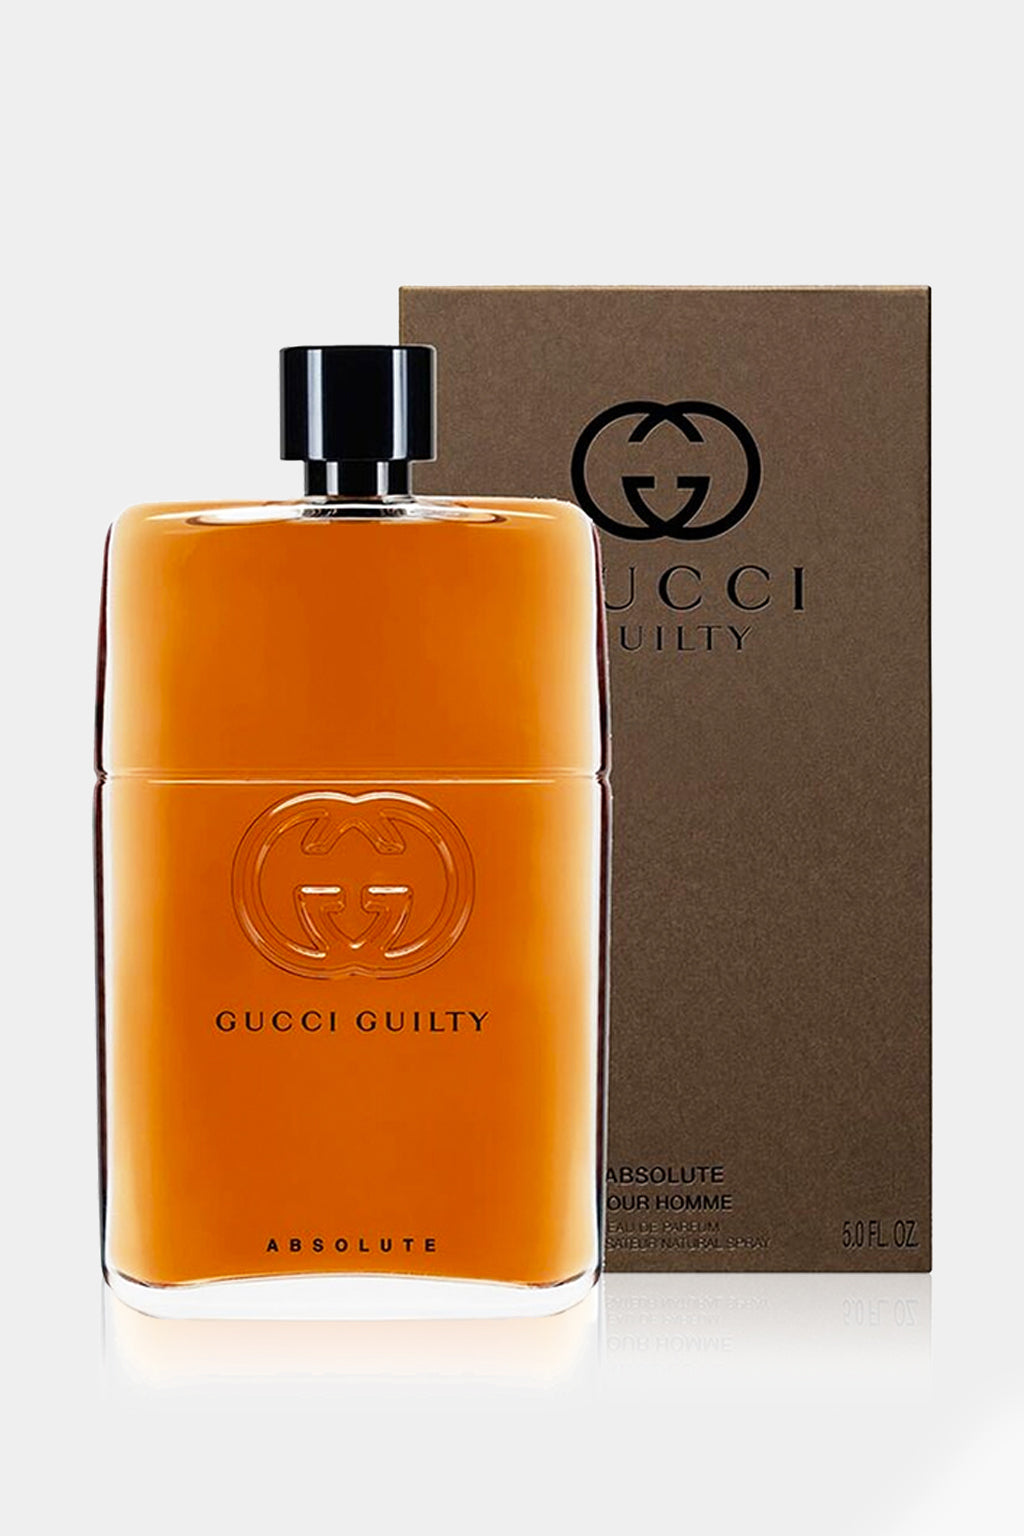 Gucci - Guilty Absolute Eau de Parfum